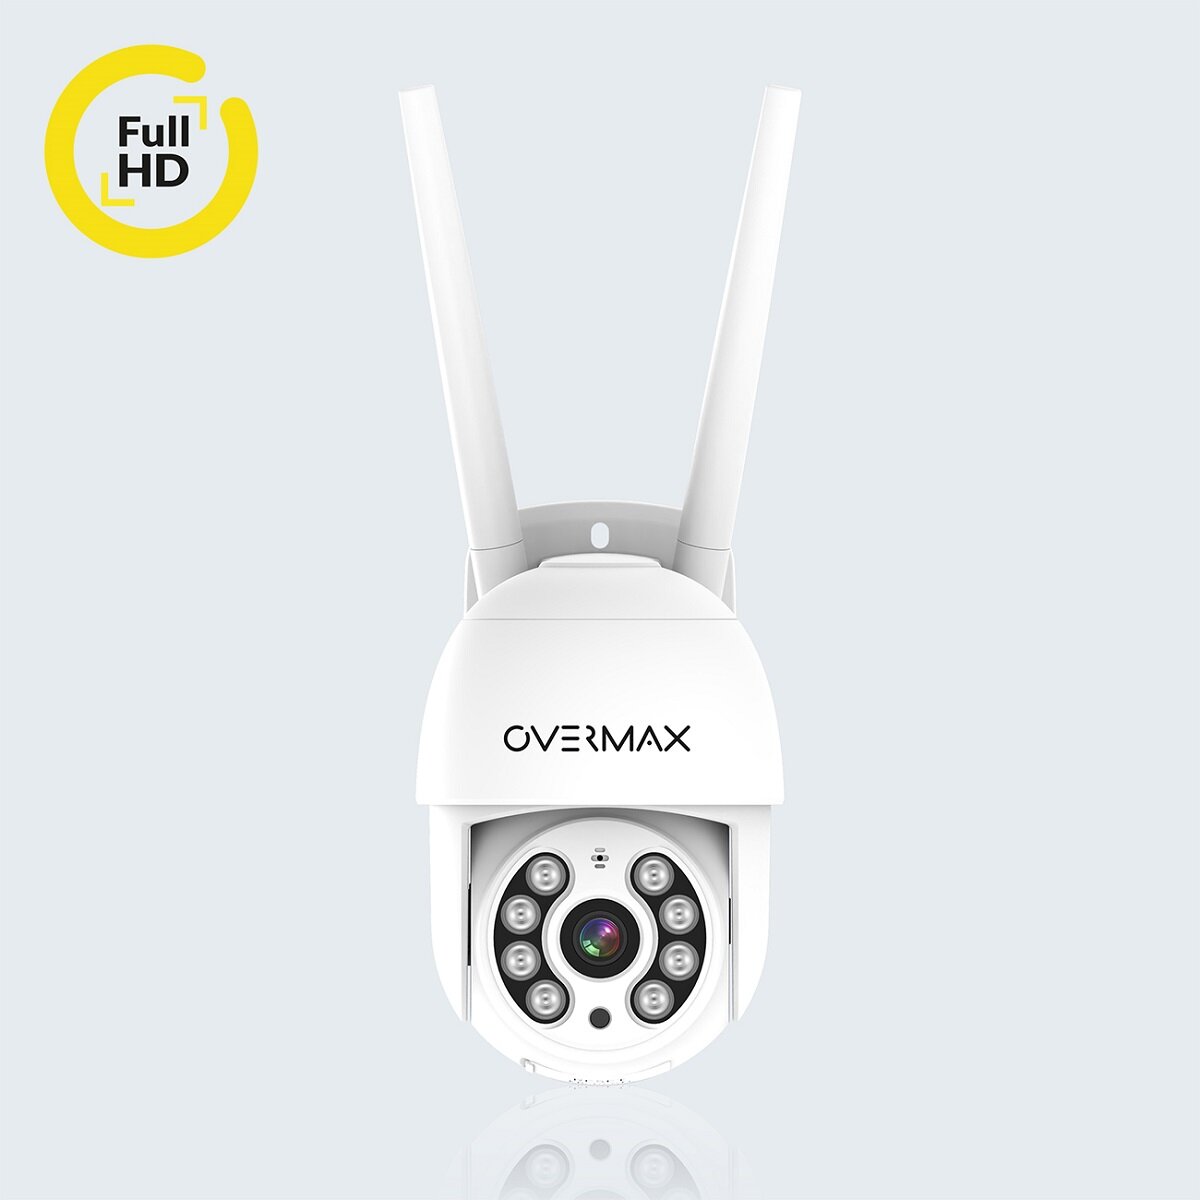 Kamera Overmax Camspot 4.0 PTZ WiFi widok kamery od przodu z informacją o rozdzielczości Full HD